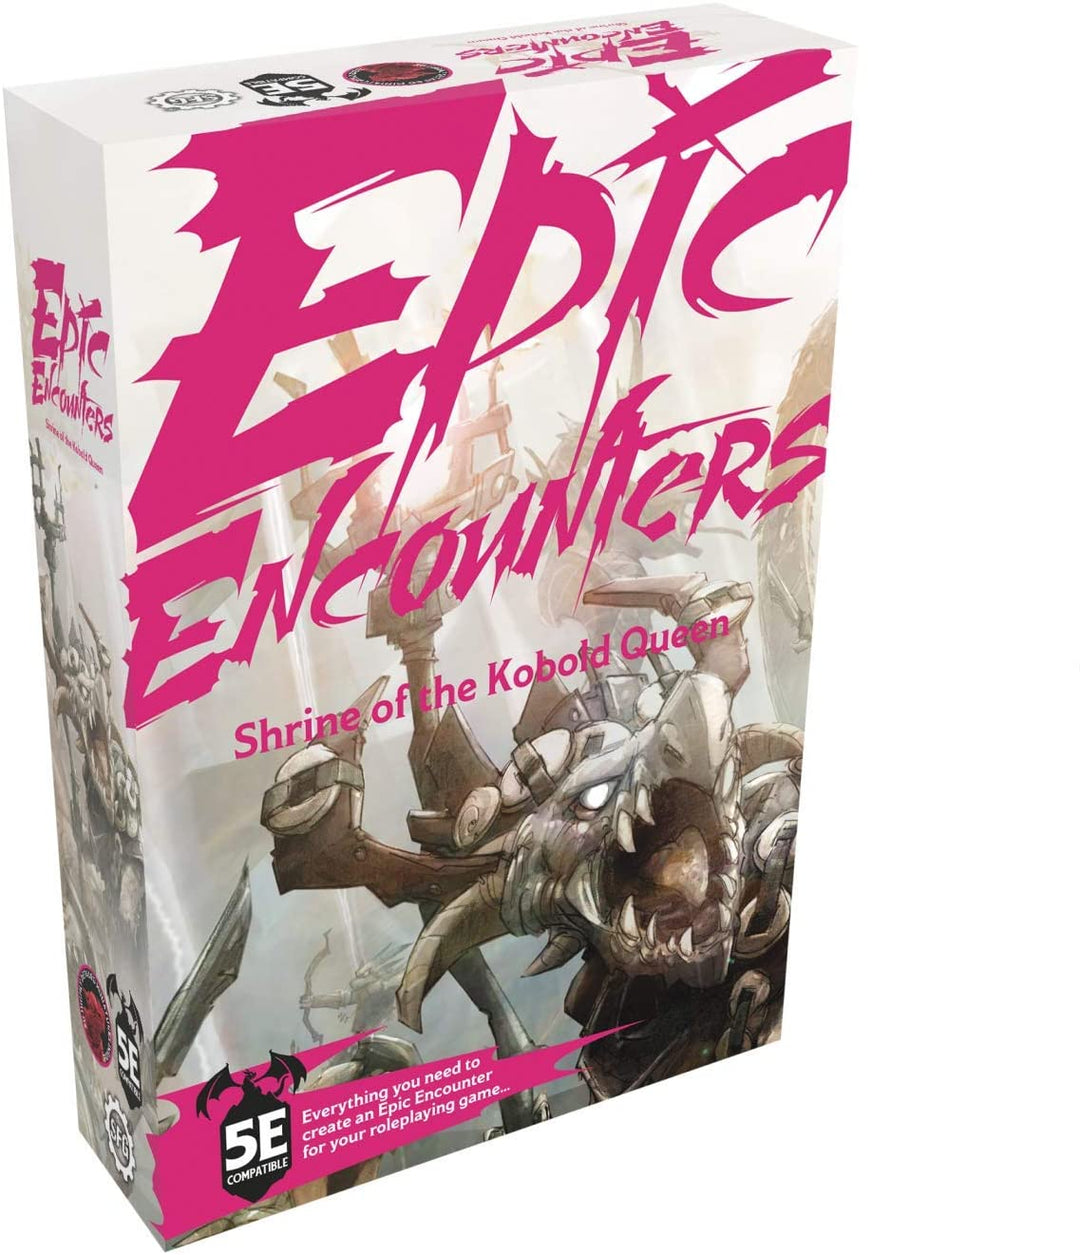 Epic Encounters: Shrine of the Kobold Queen – RPG-Fantasy-Rollenspiel-Tischspiel mit 20 Miniaturen, doppelseitiger Spielmatte und Game-Master-Abenteuerbuch mit Monsterstatistiken, 5E-kompatibel